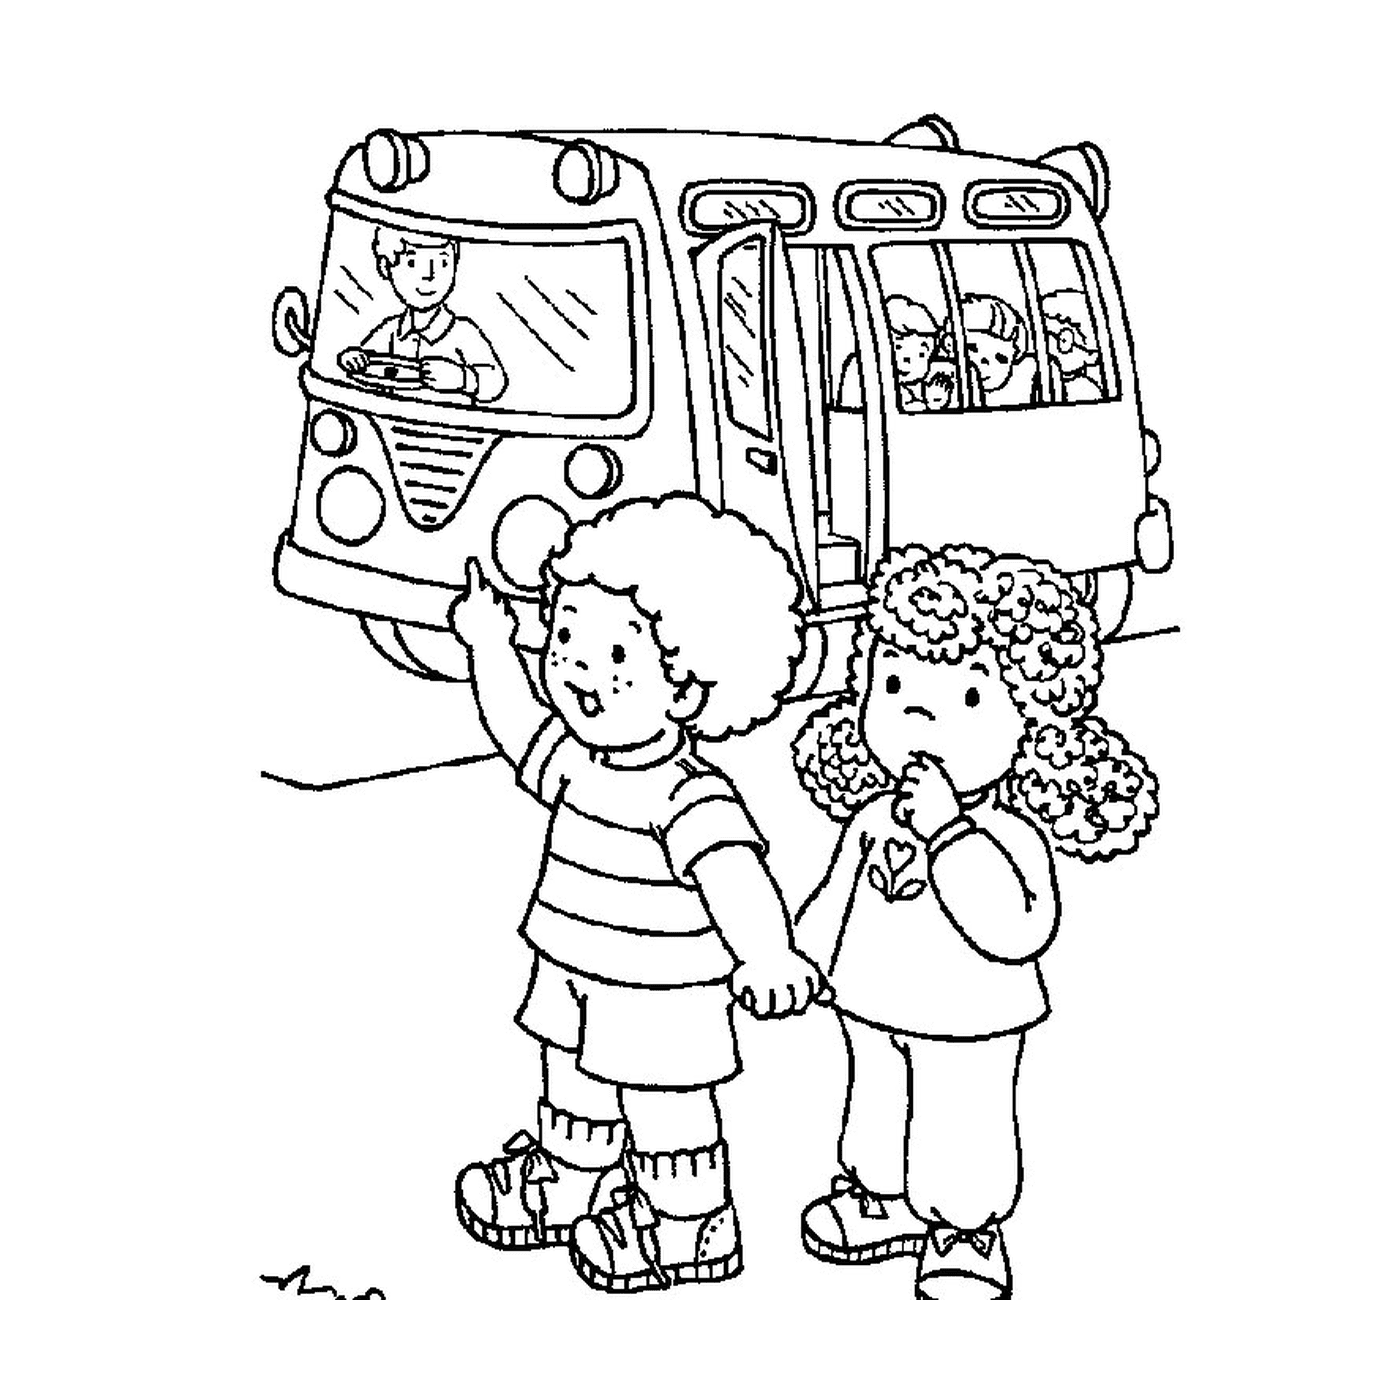   Deux enfants devant un autobus scolaire 